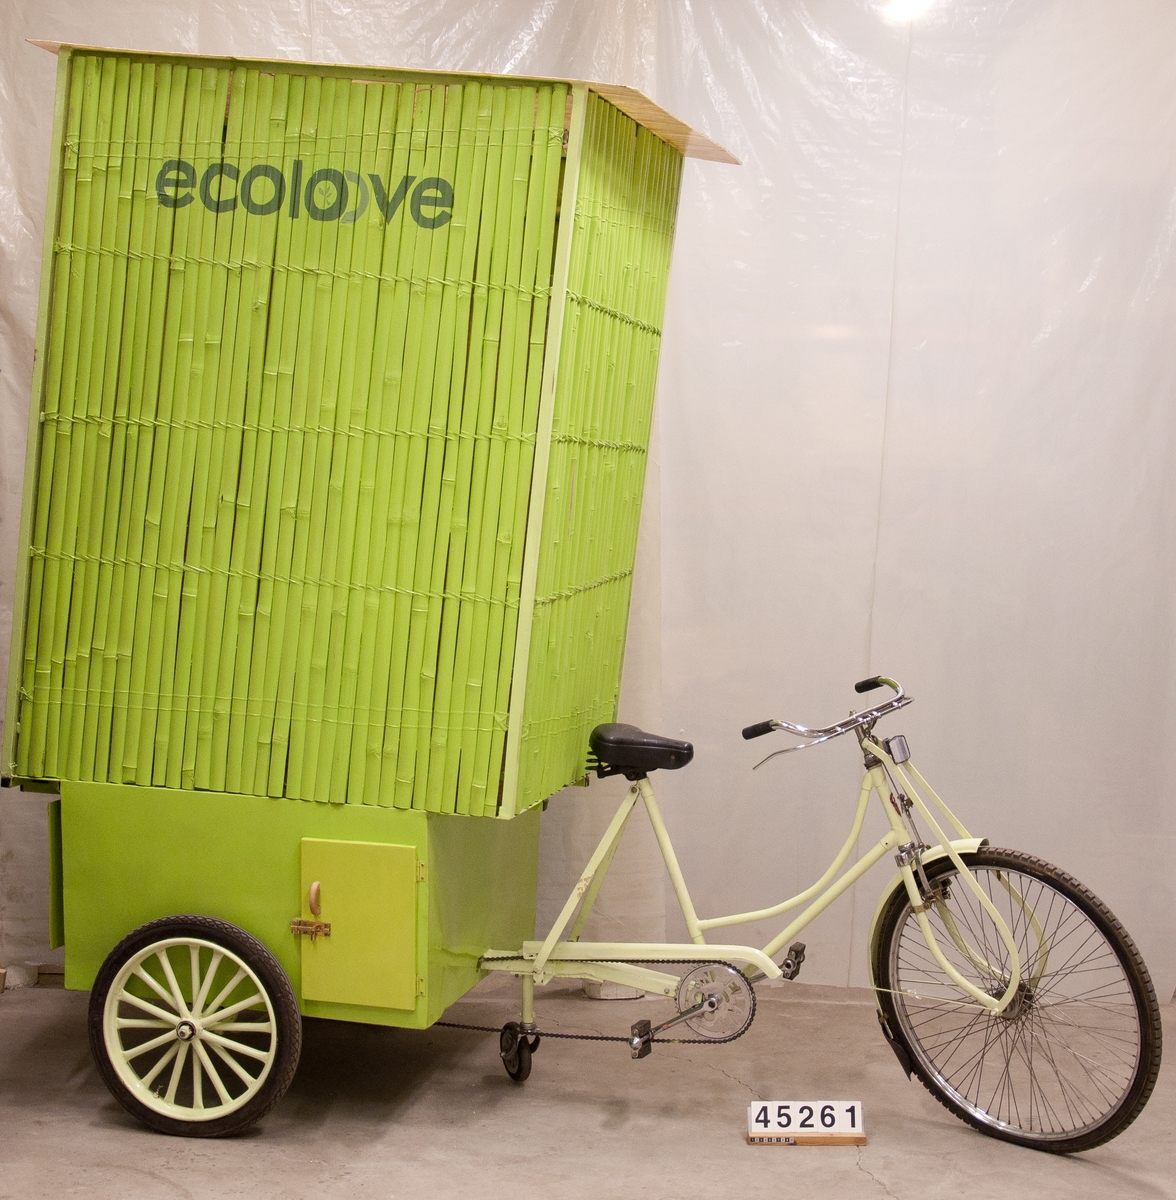 Ecoloove består av en hytt av bambu  med golv och tak av plastlaminat. Toaletten i hytten separerar urin och fekalier som samlas upp i kärl under hytten. Den trehjuliga cykeln som bär upp hytten är en modifierad trehjulig indisk damcykel.